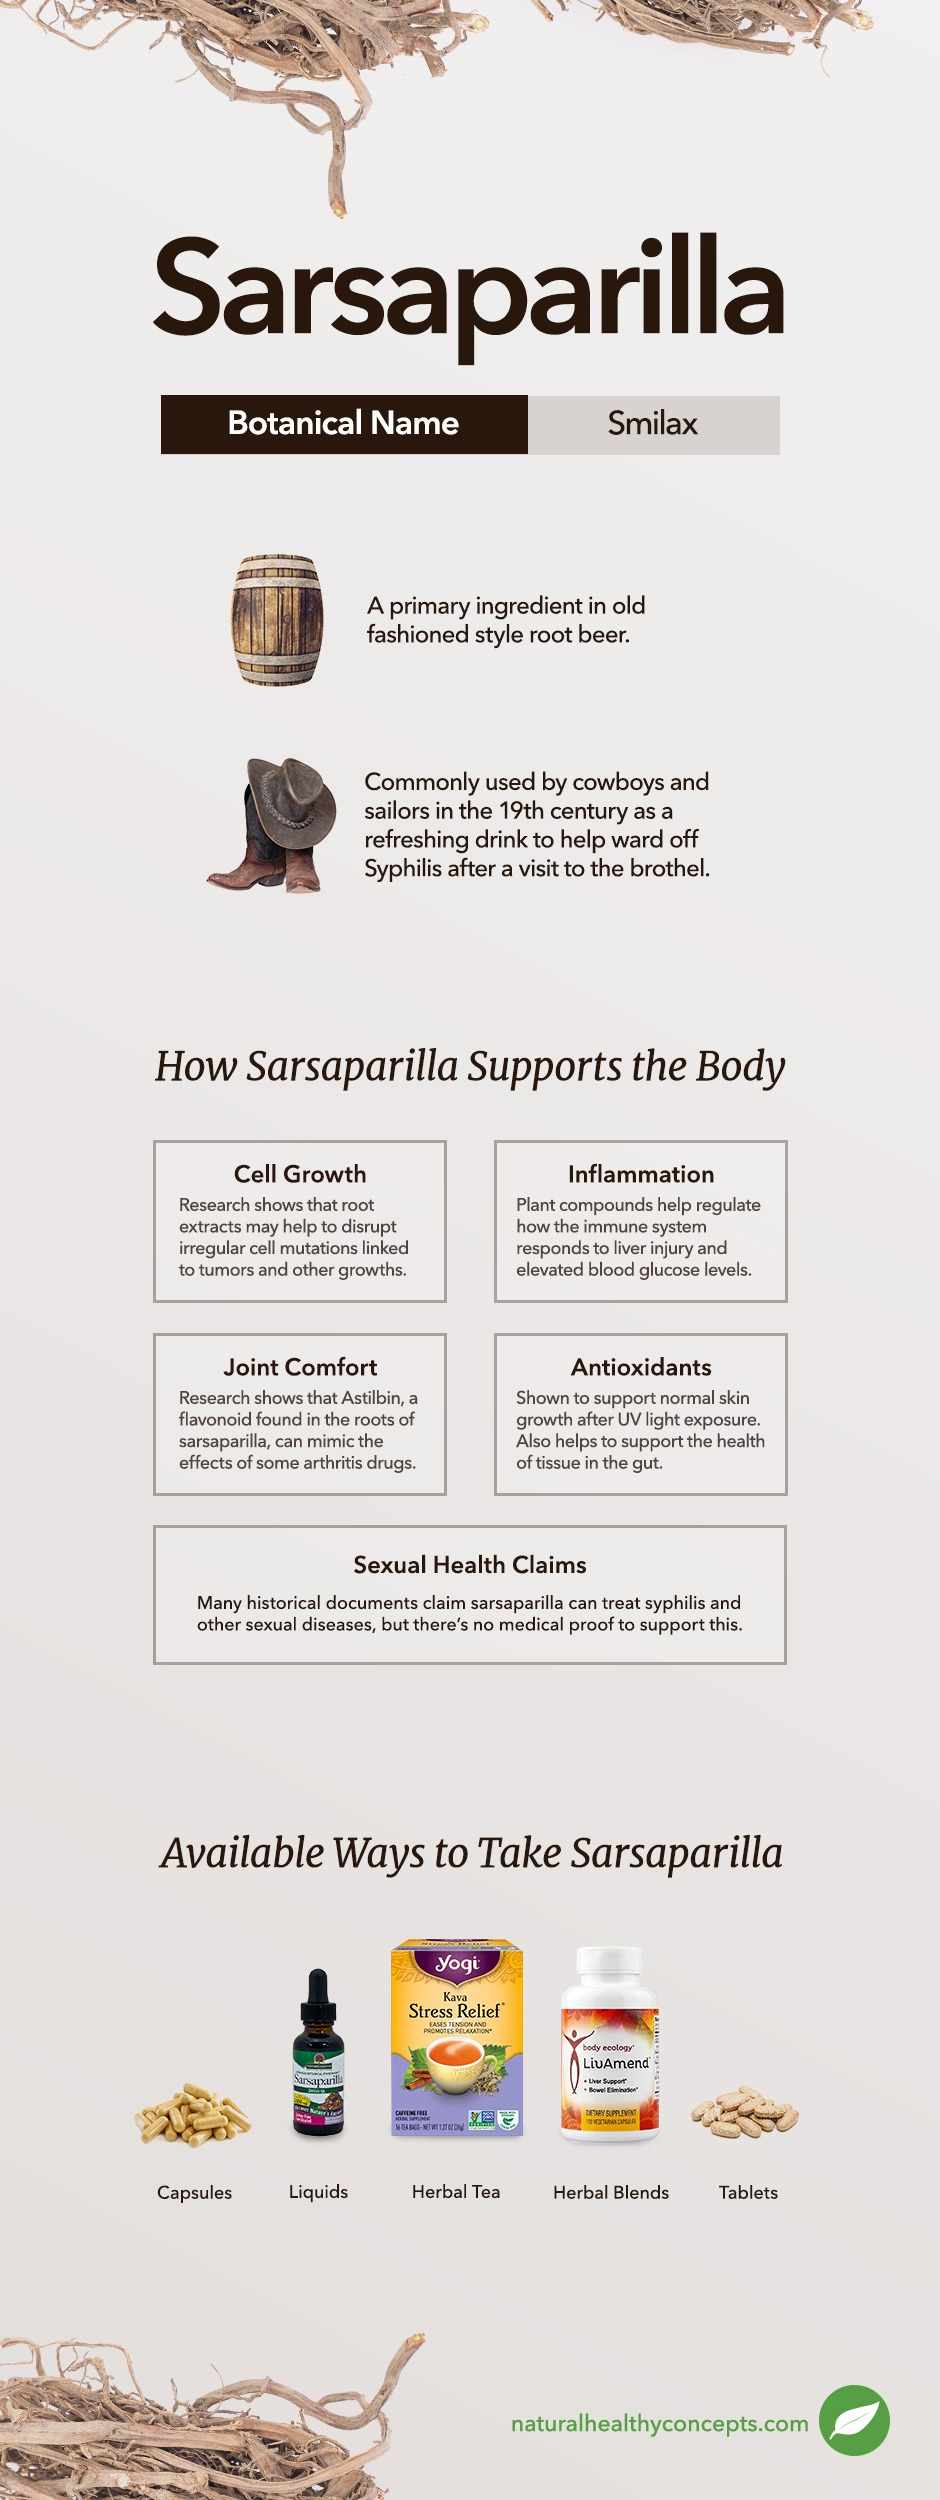 sarsaparilla infographic